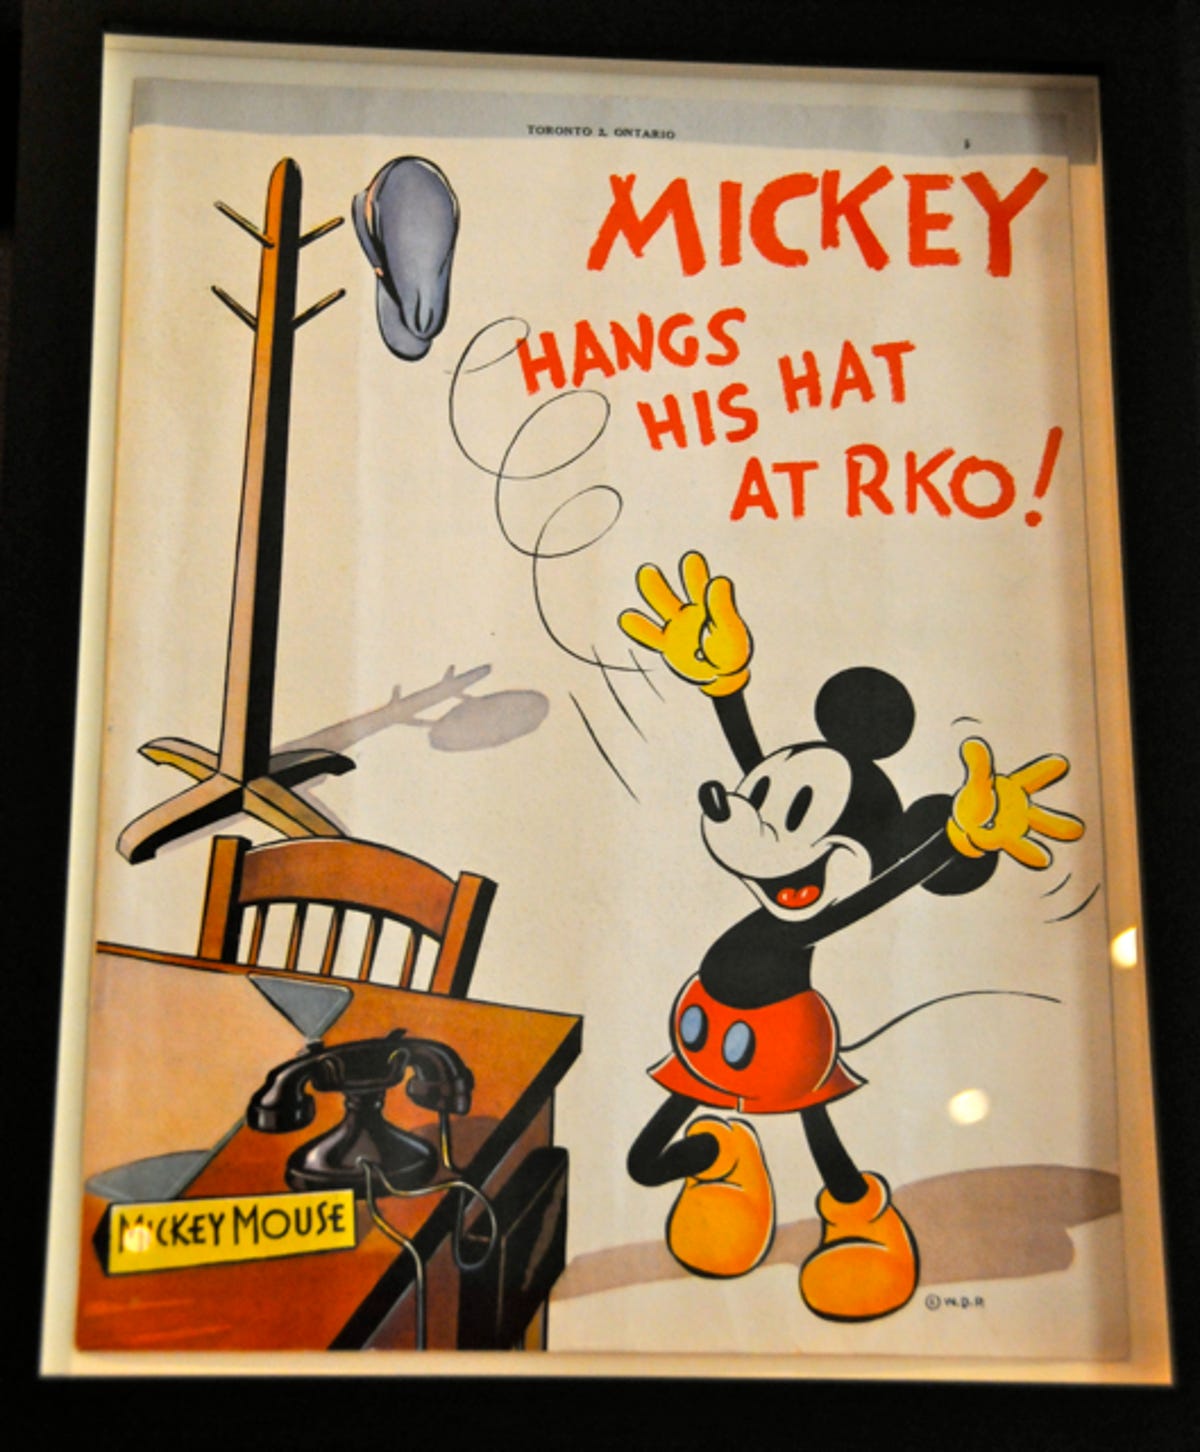 wdfm-Mickey_hangs_his_hat_at_RKO.jpg